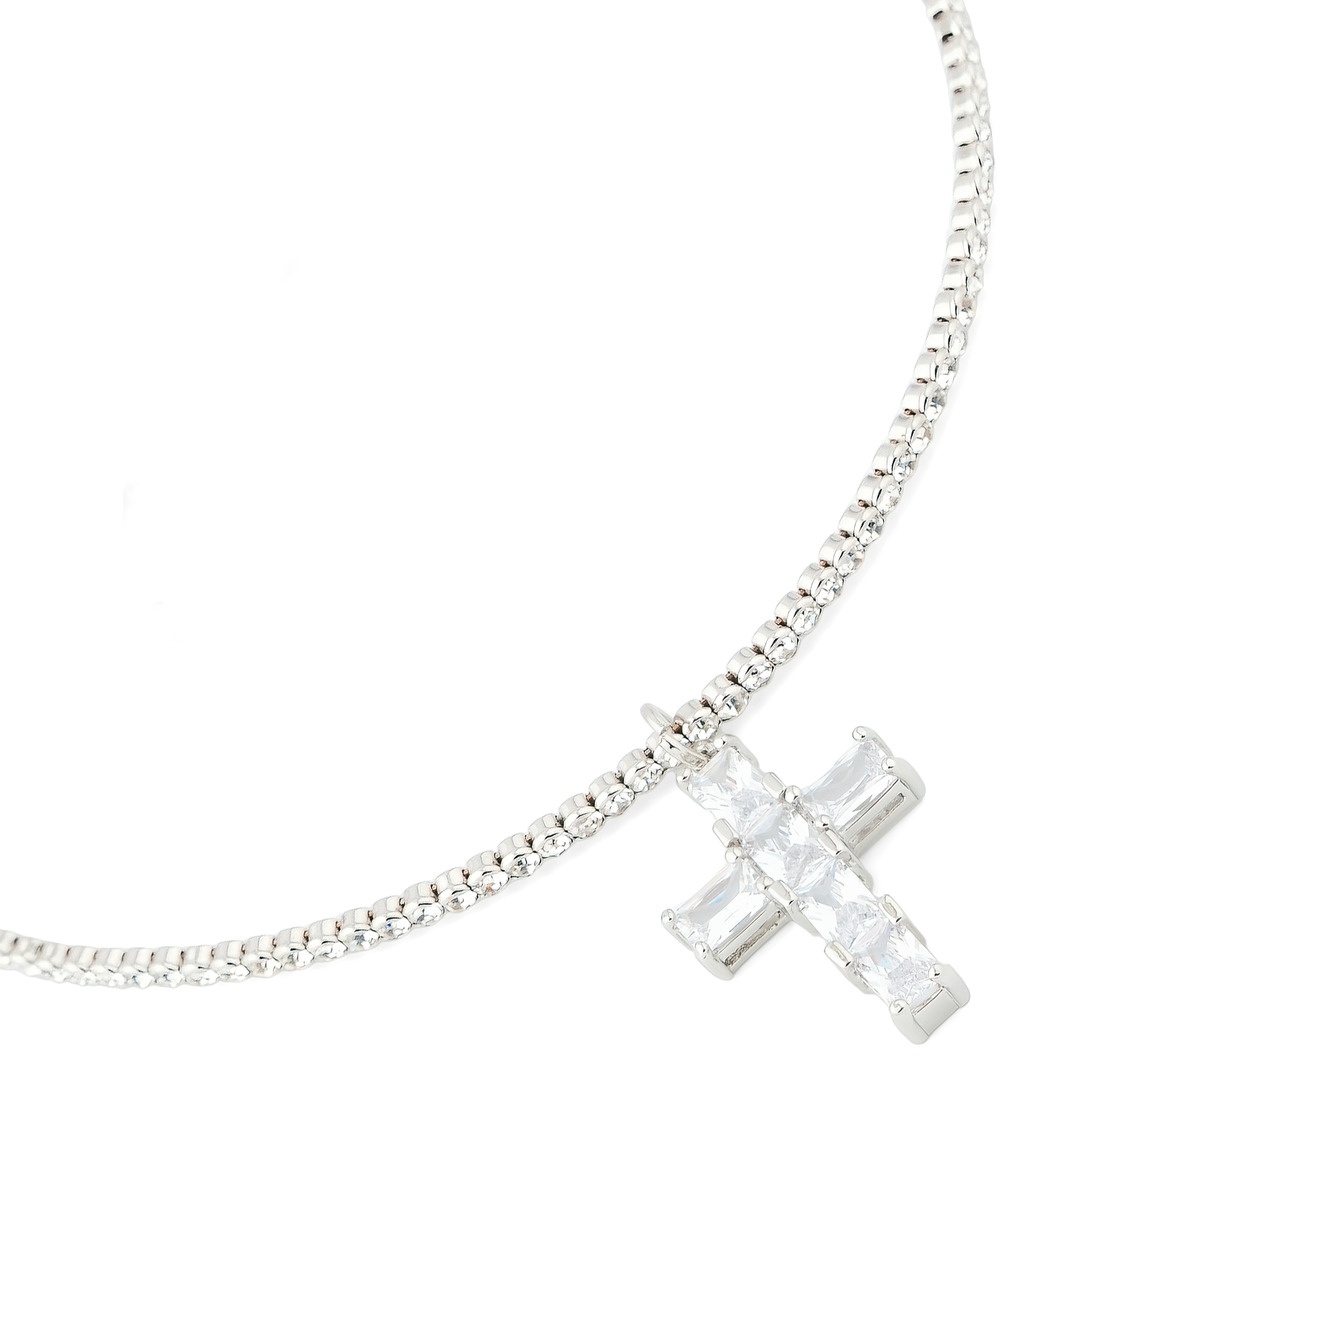 Herald Percy Чокер с белыми кристаллами и крестом herald percy золотистое длинное колье с крестом с кристаллами